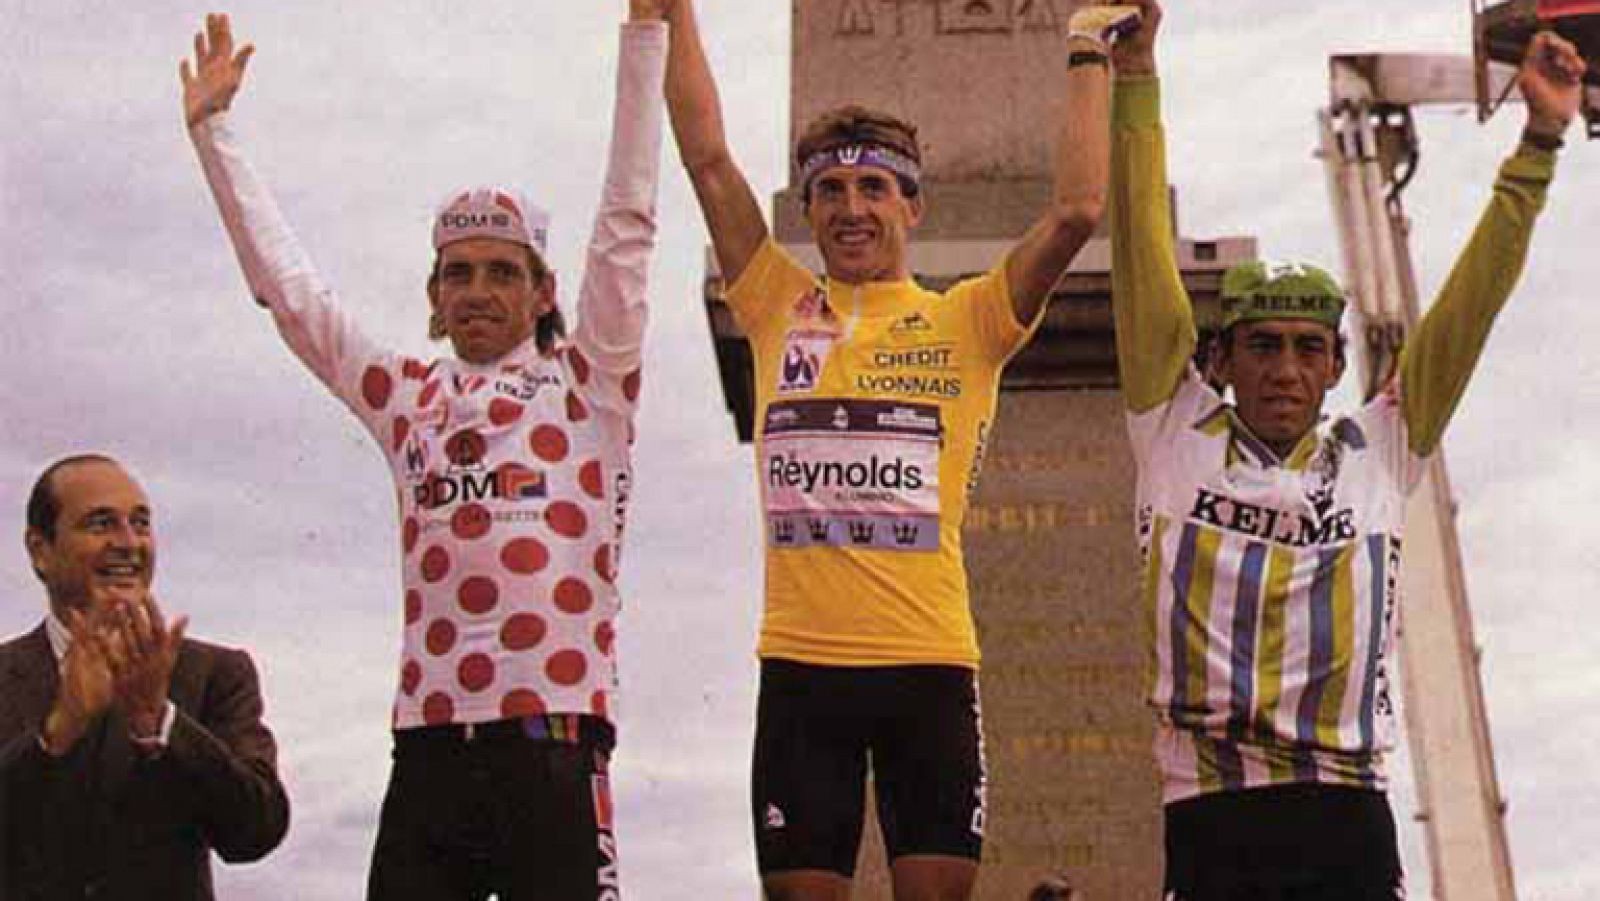 Después de rozar la victoria en 1987, al año siguiente Pedro Delgado se puso el Tour entre ceja y ceja. Se mostró el más regular durante los primeros días de competición, y aunque la mala suerte vuelve a hacer aparición en la 5ª etapa, donde pierde m